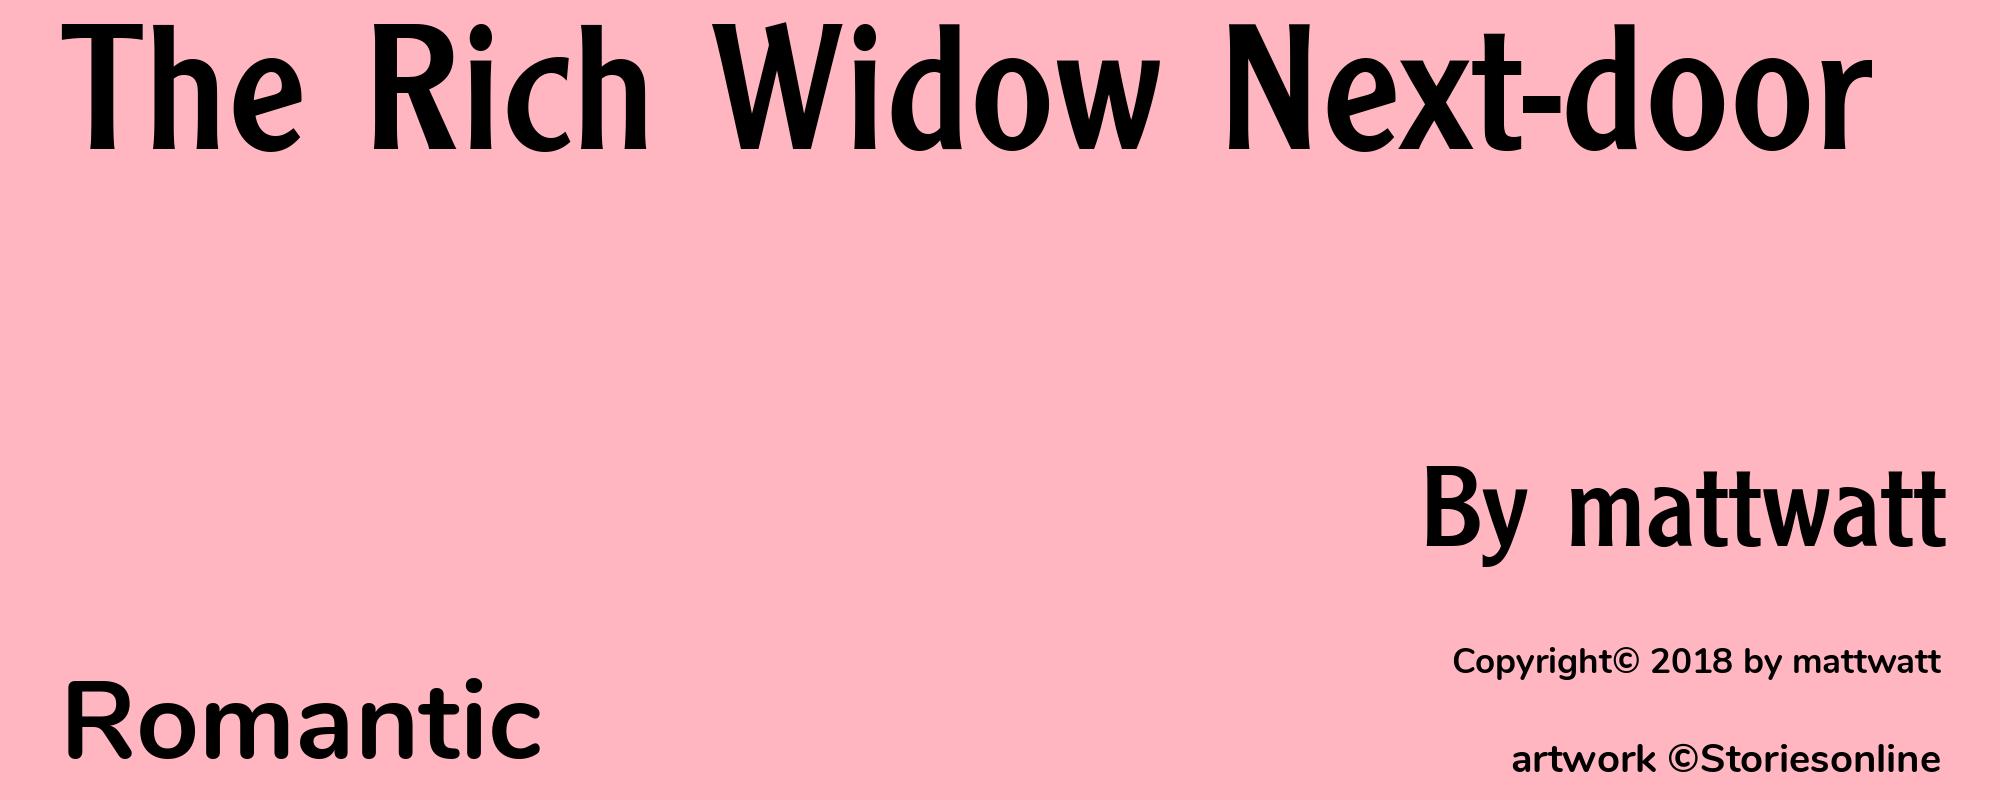 The Rich Widow Next-door - Cover